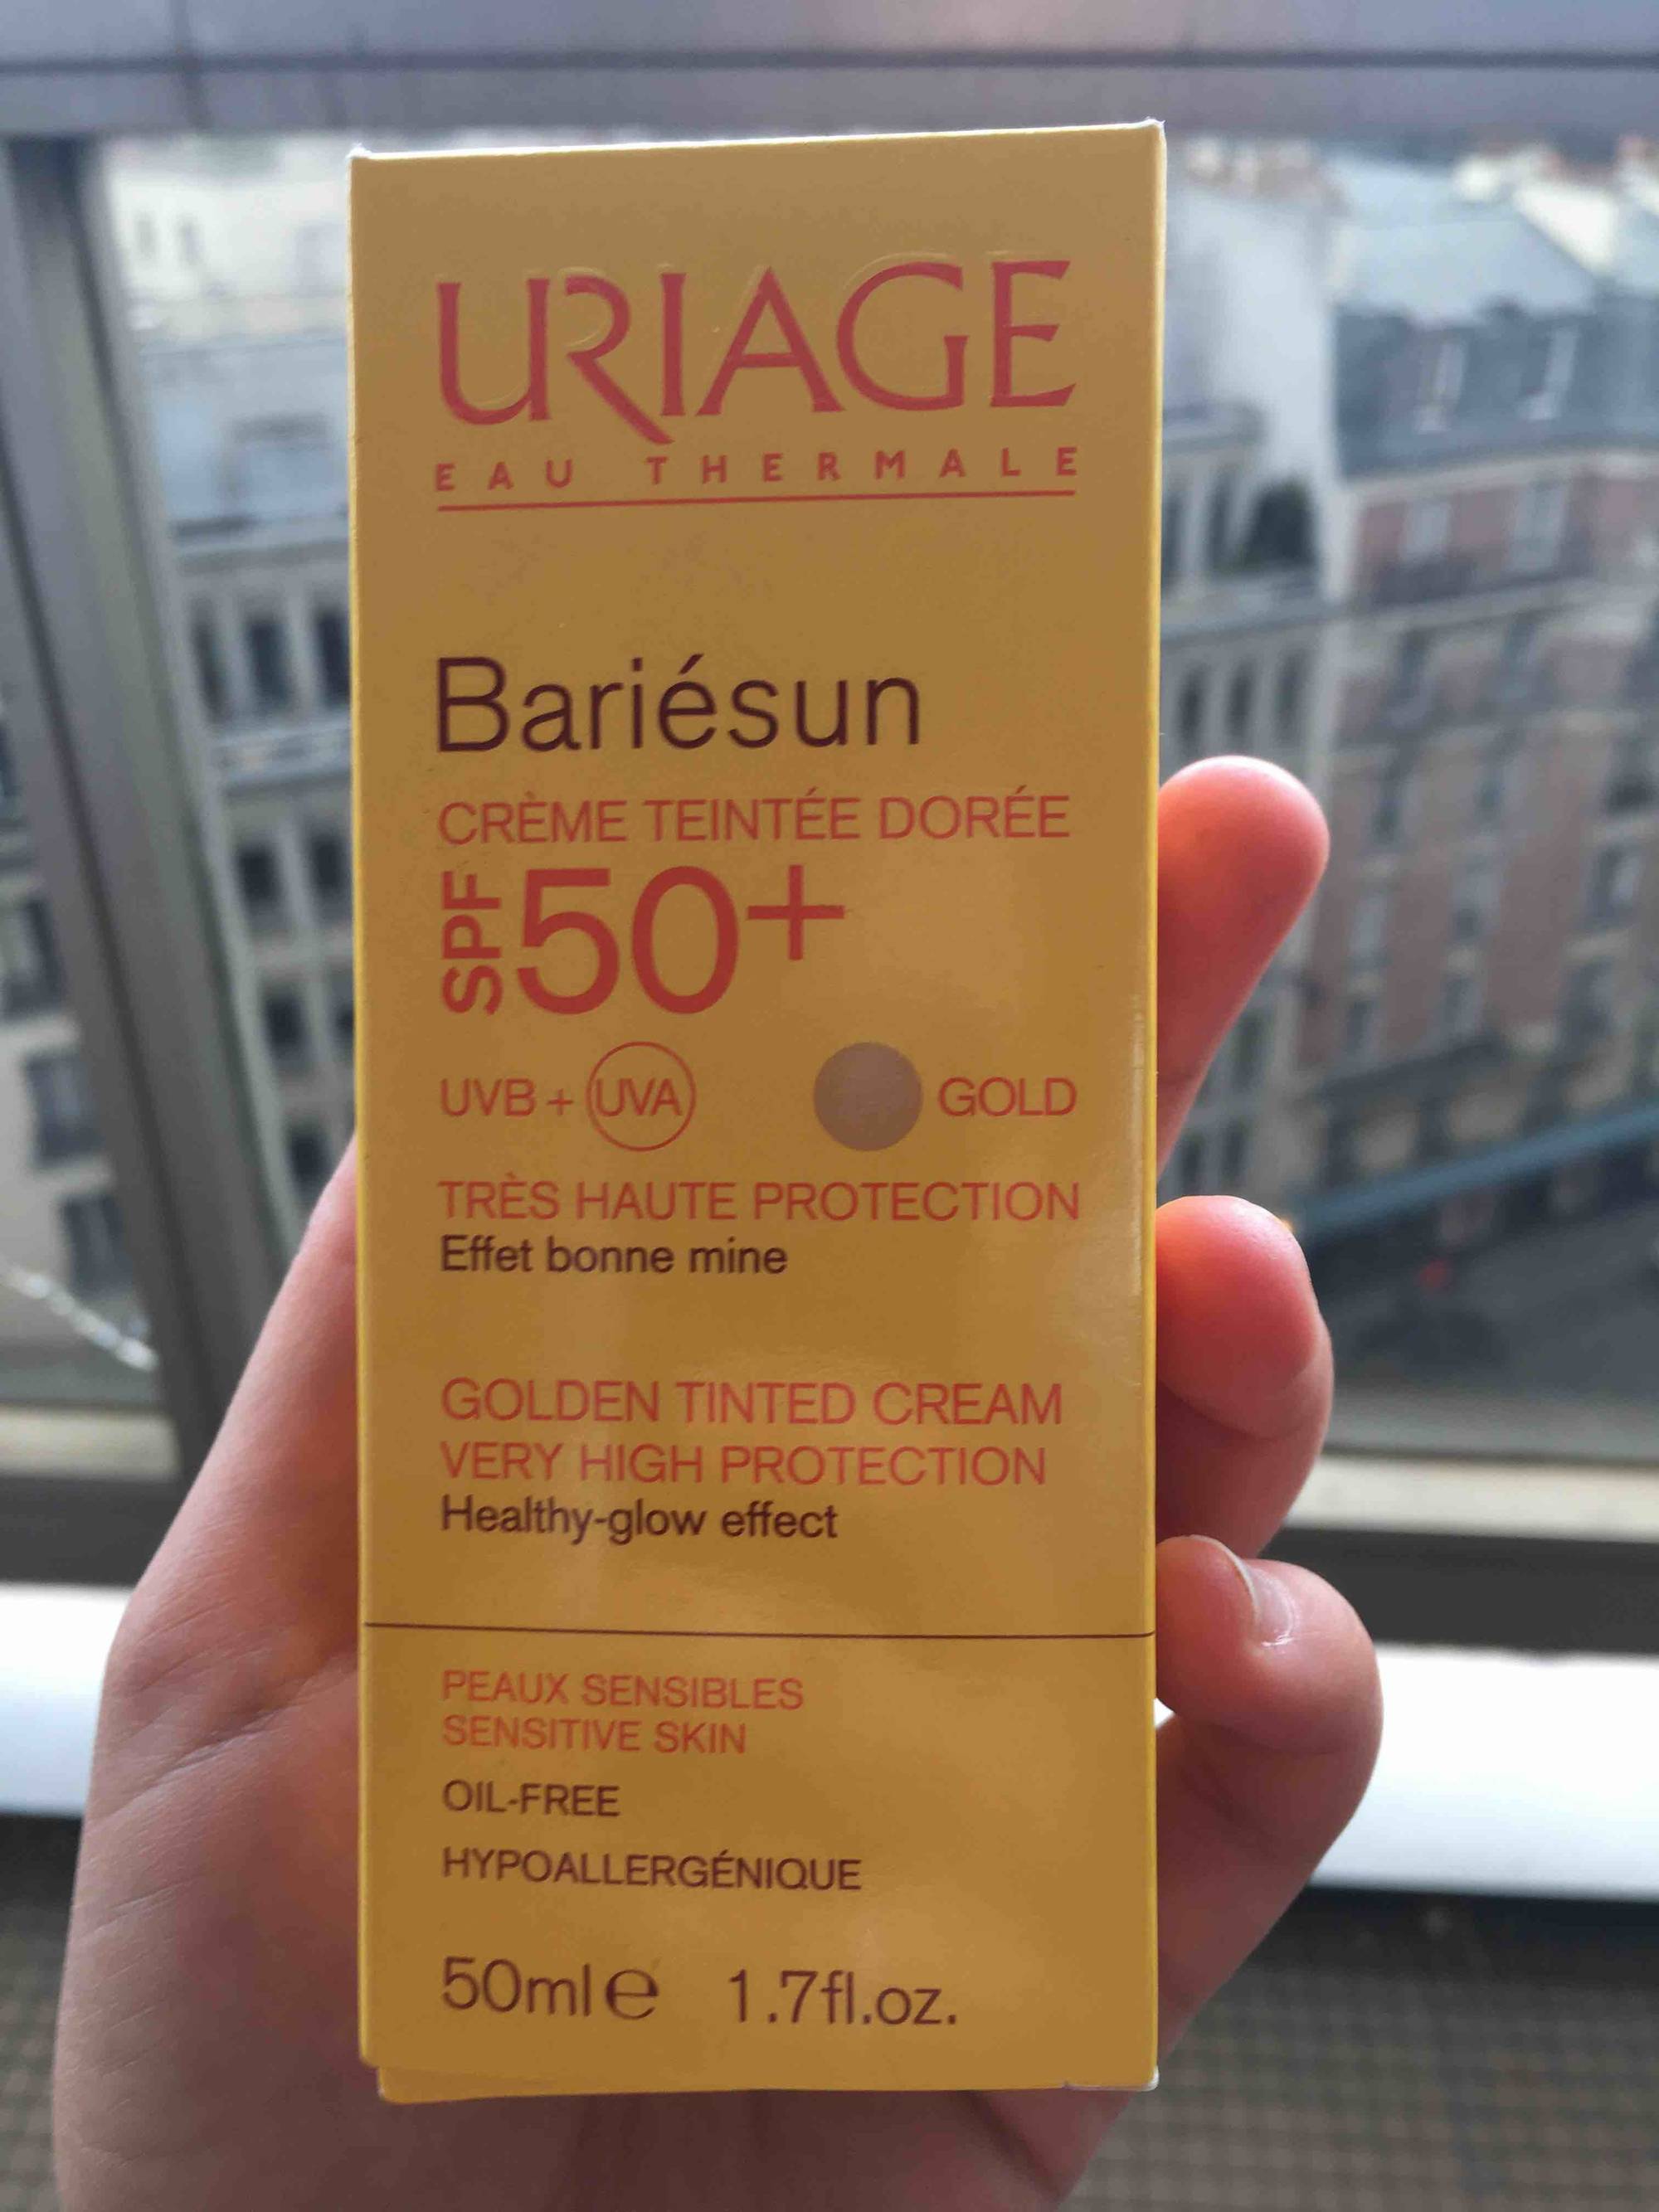 URIAGE - Bariésun - Crème teintée dorée - SPF 50+